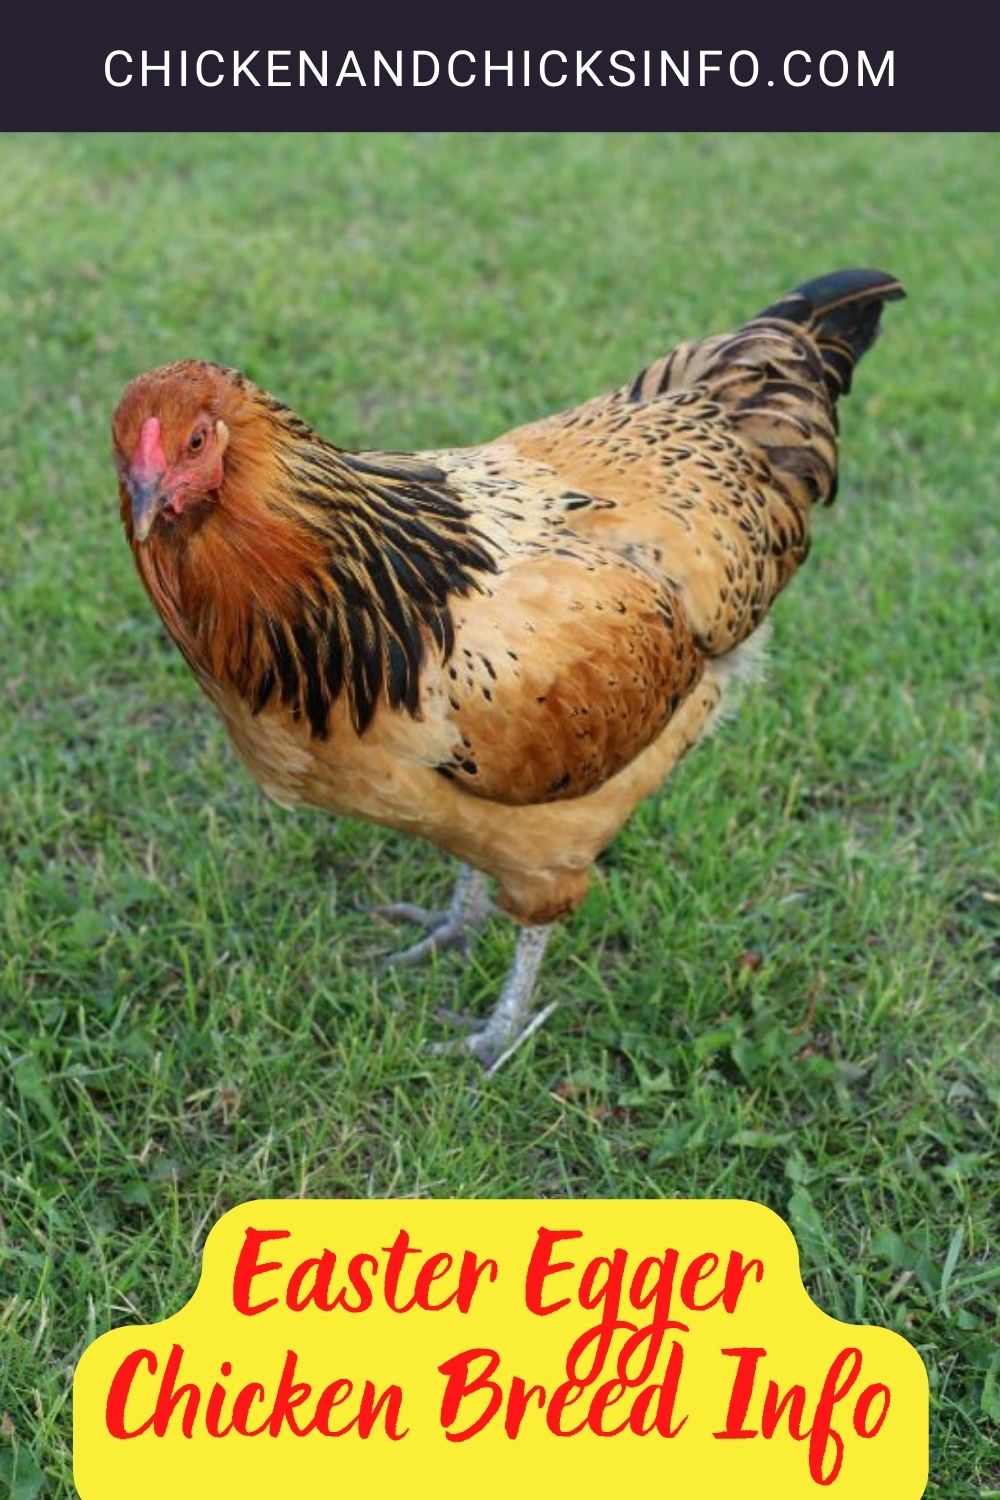 Easter Egger Chicken Breed Info Pinterest image.